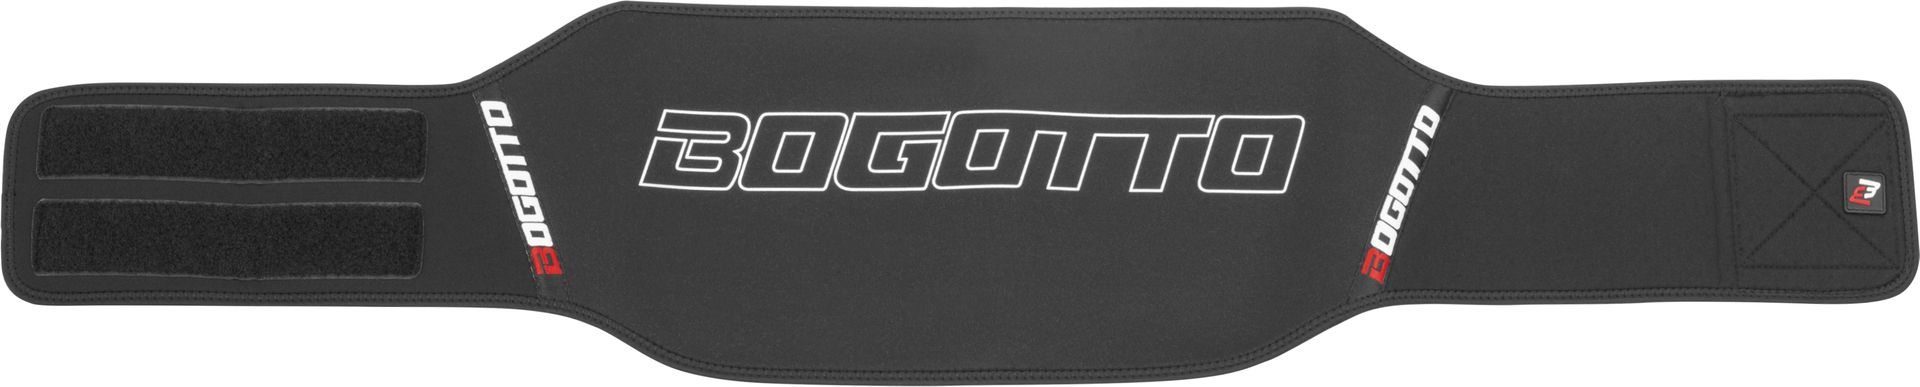 Пояс Bogotto BGX-Neo с логотипом, черный